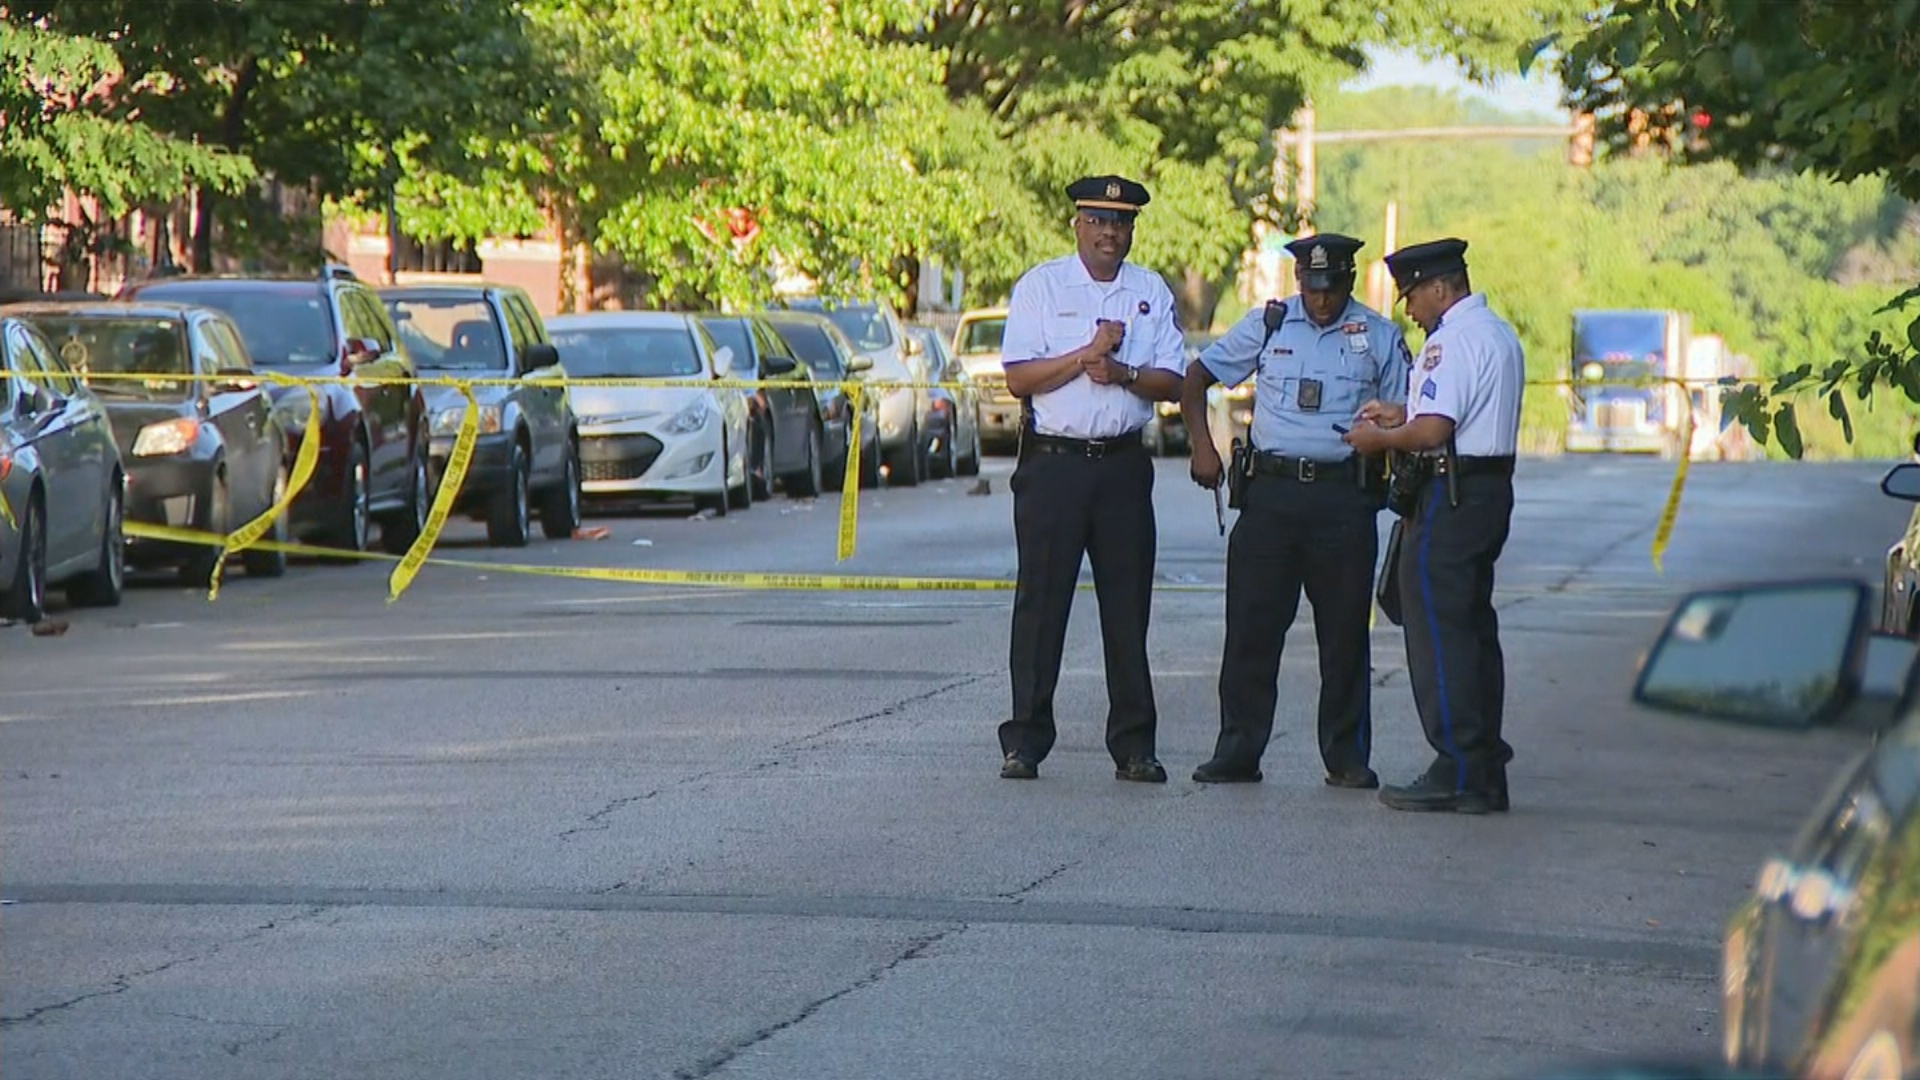 5 separate shootings in Philadelphia leave 2 dead, 6 injured, police say